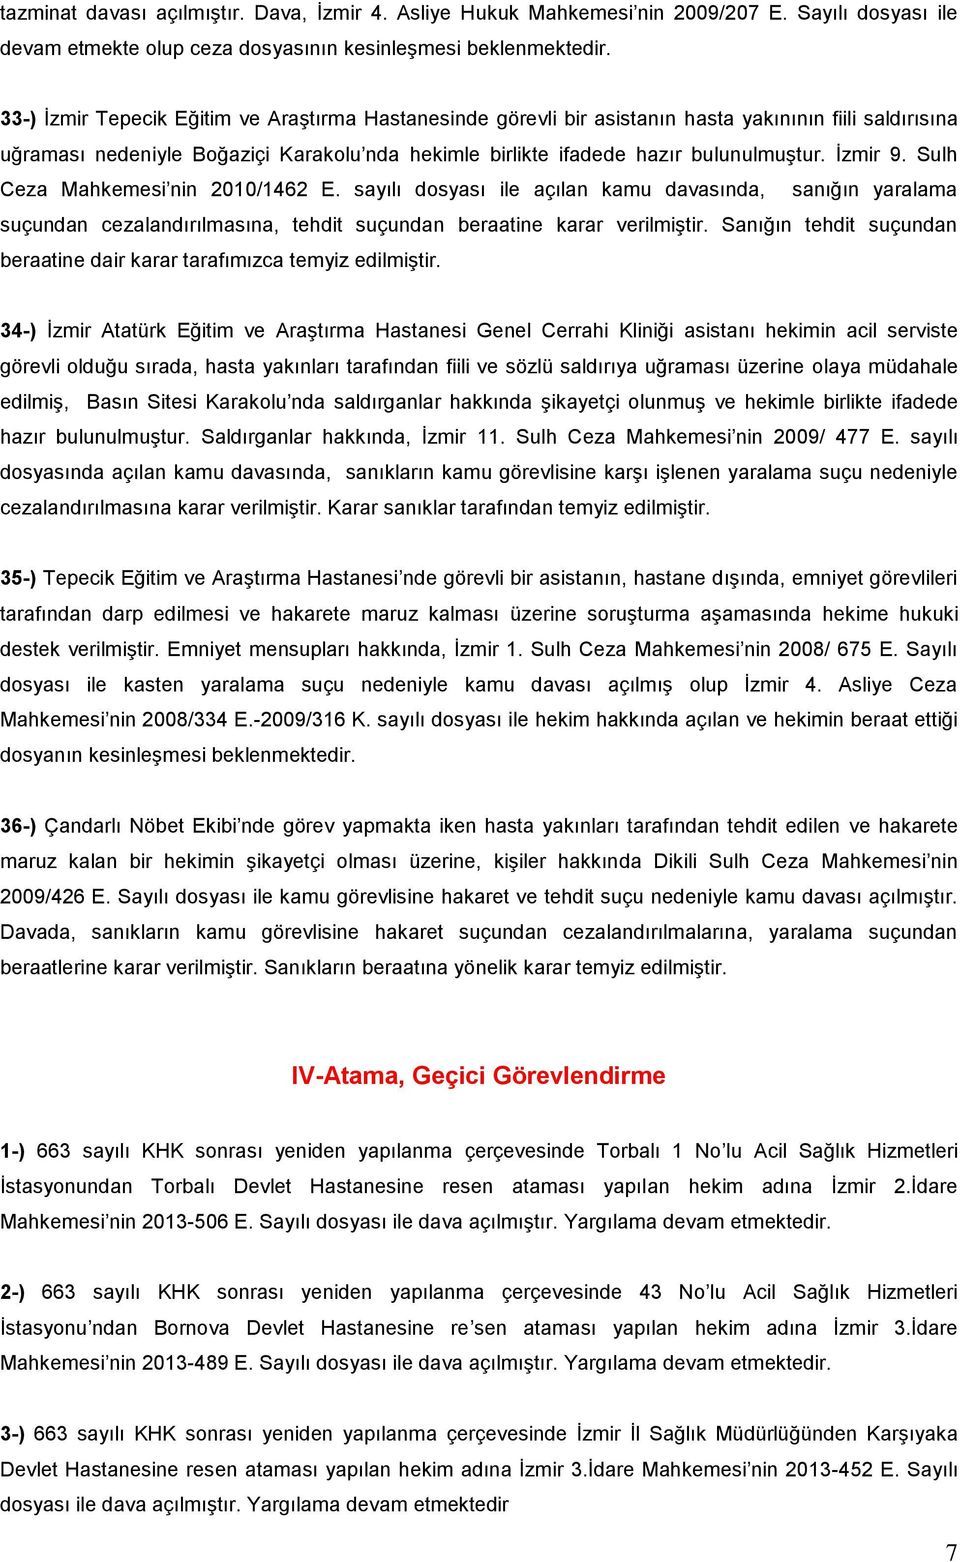 İzmir 9. Sulh Ceza Mahkemesi nin 2010/1462 E. sayılı dosyası ile açılan kamu davasında, sanığın yaralama suçundan cezalandırılmasına, tehdit suçundan beraatine karar verilmiştir.